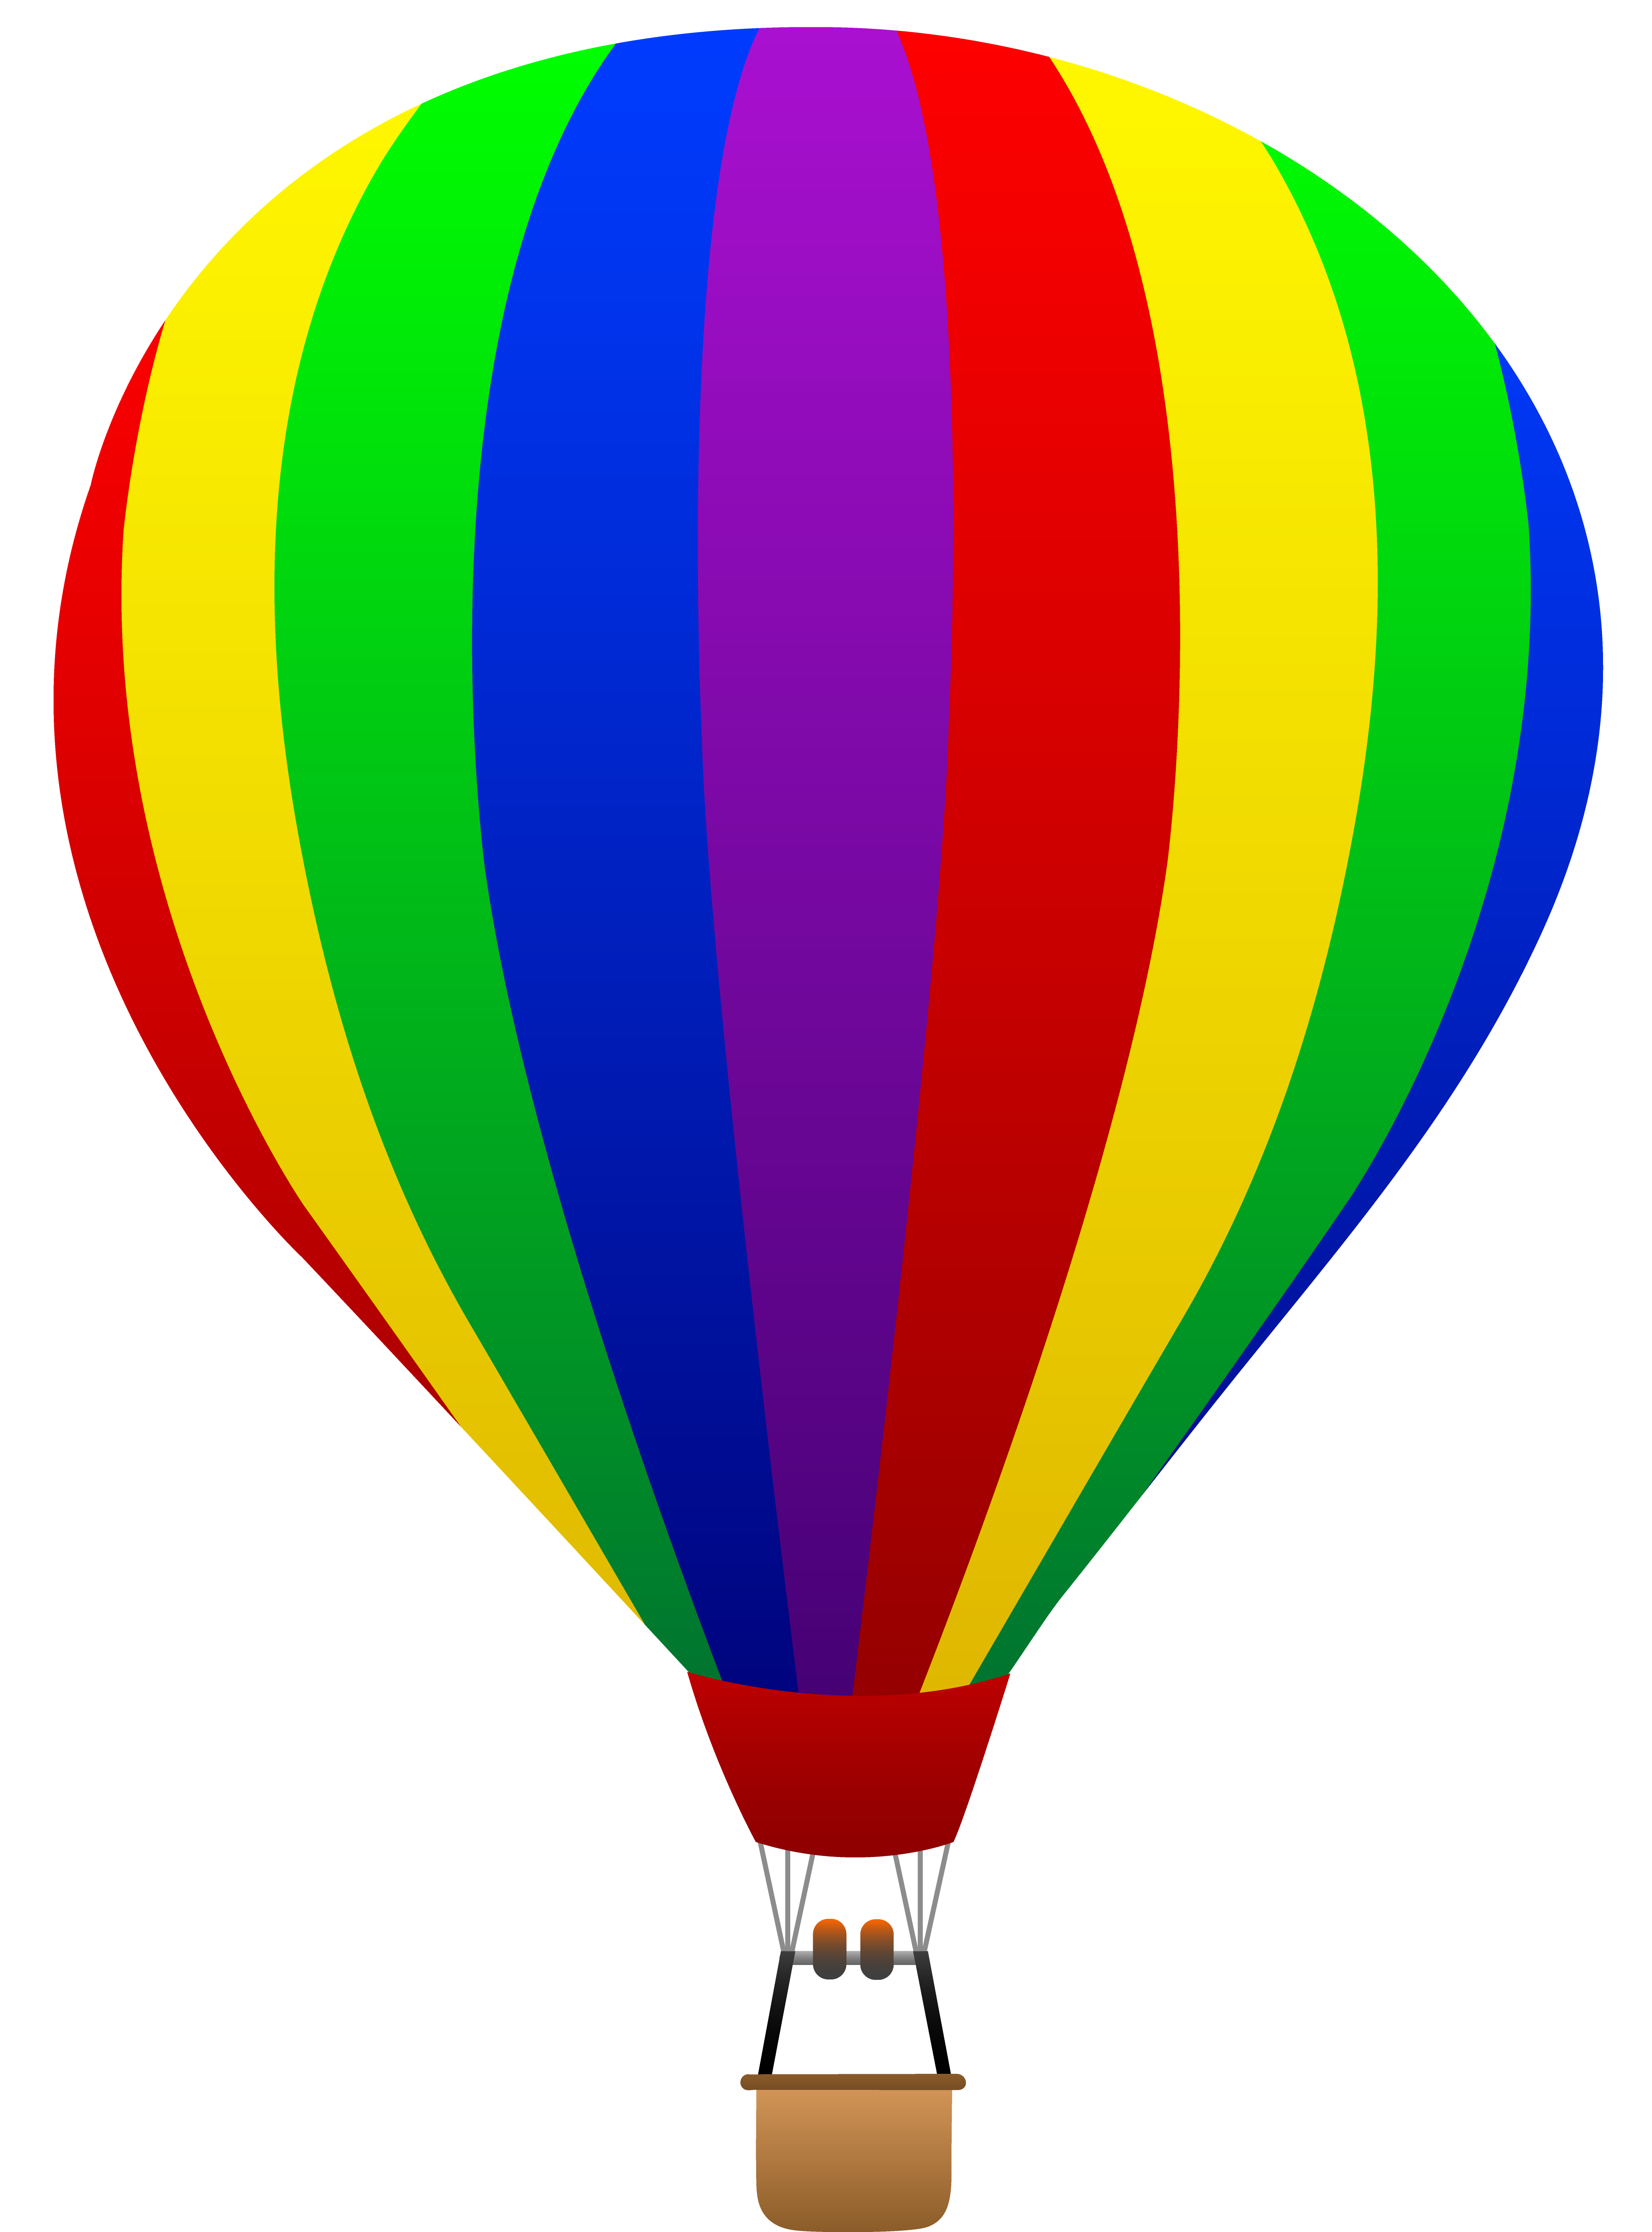 Free clip art of a fun rainbow striped hot air balloon